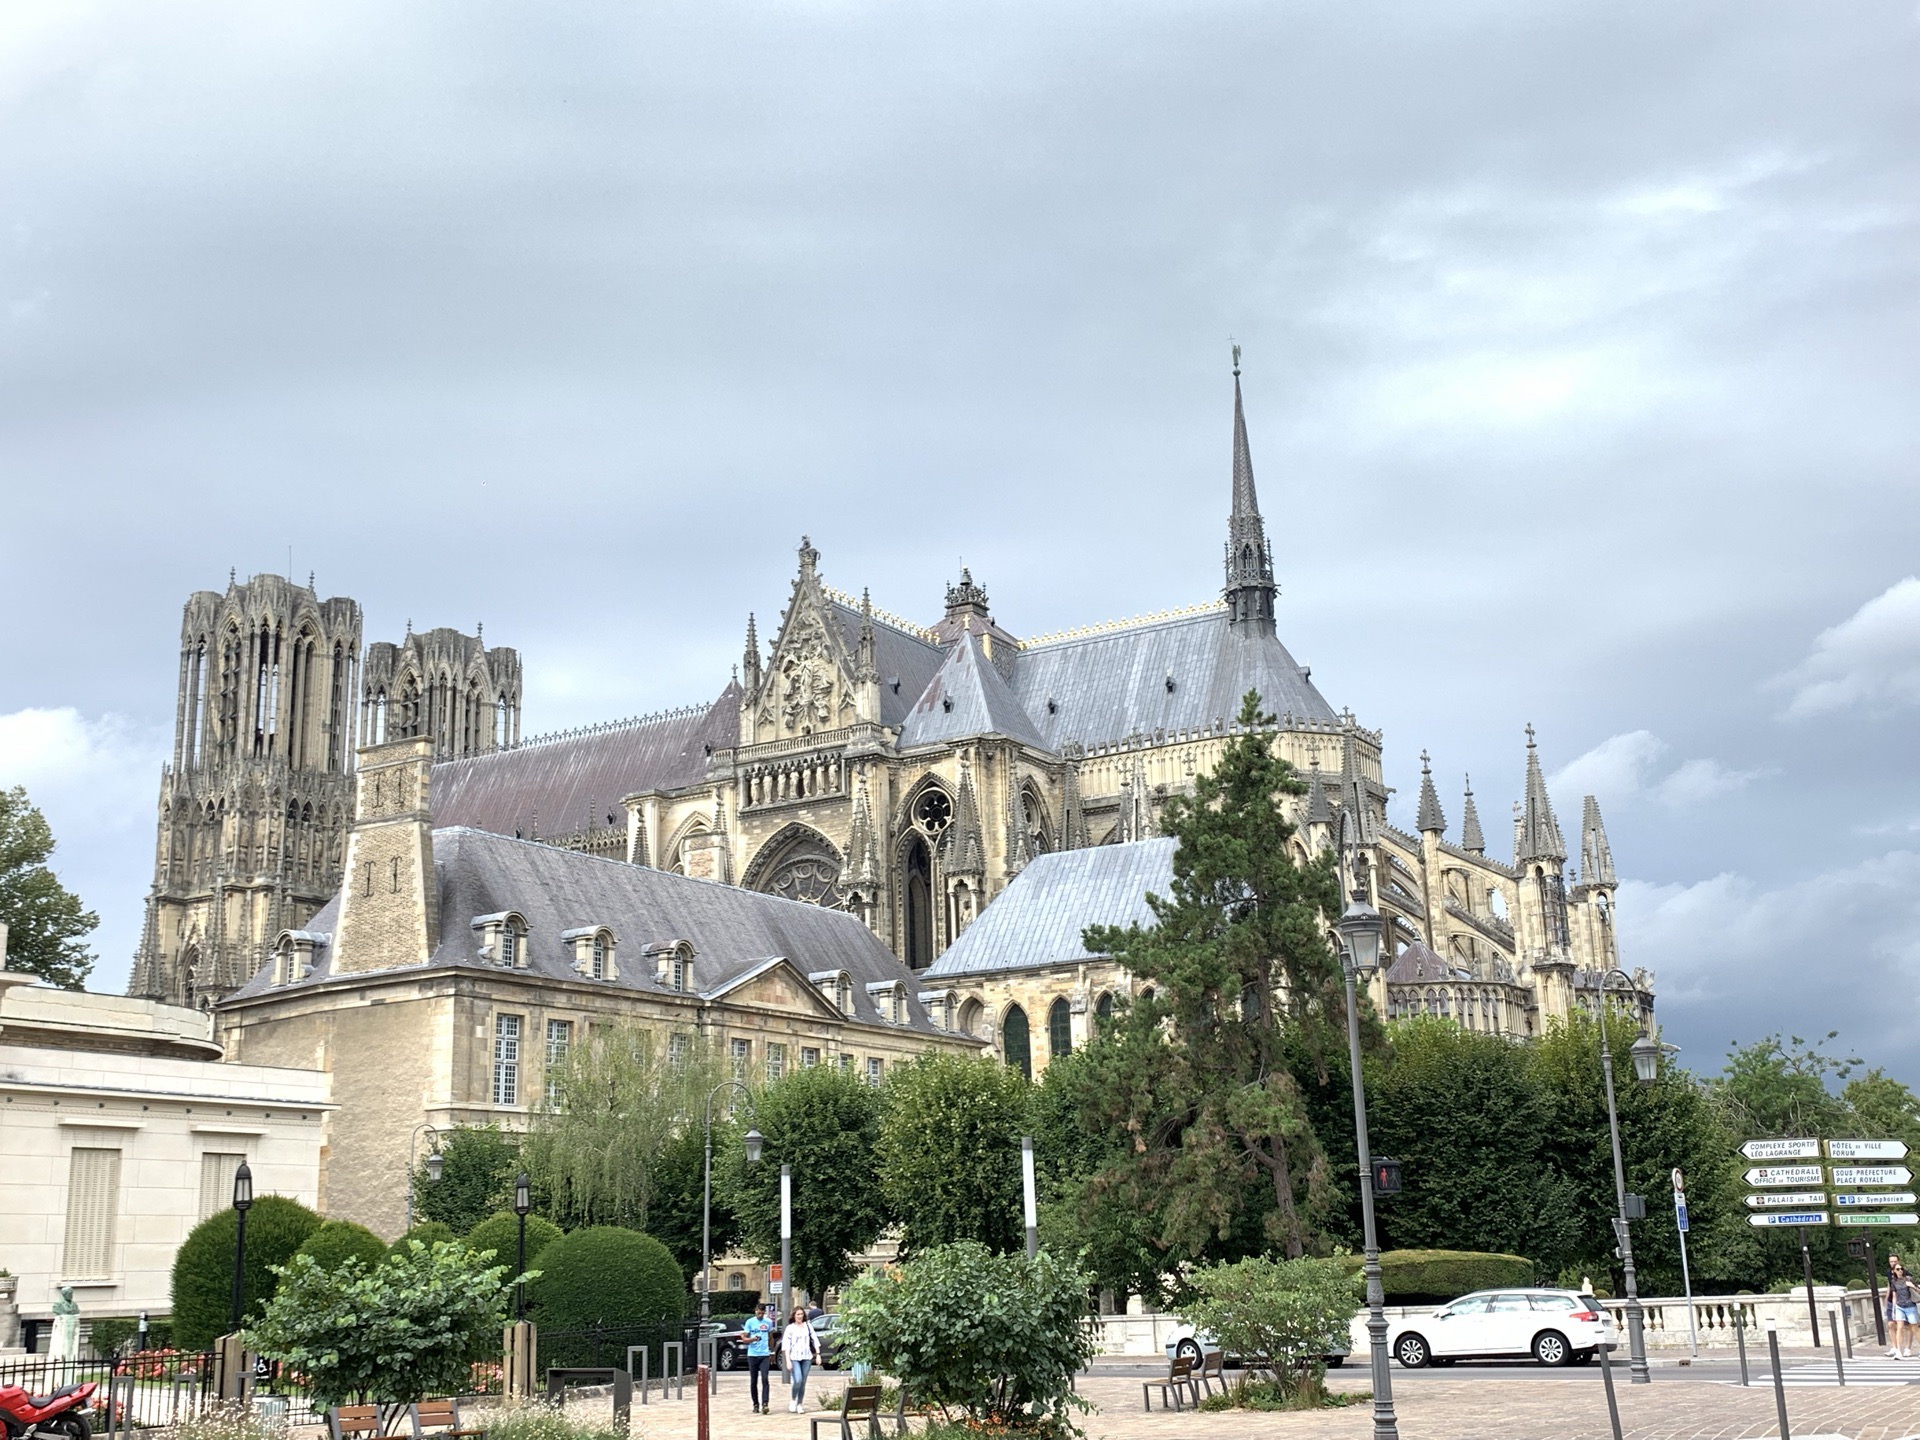 兰斯大教堂～“兰斯的微笑” 位于法国著名的香槟区 公元13世纪建造，这个外观设计和巴黎圣母院基本上是